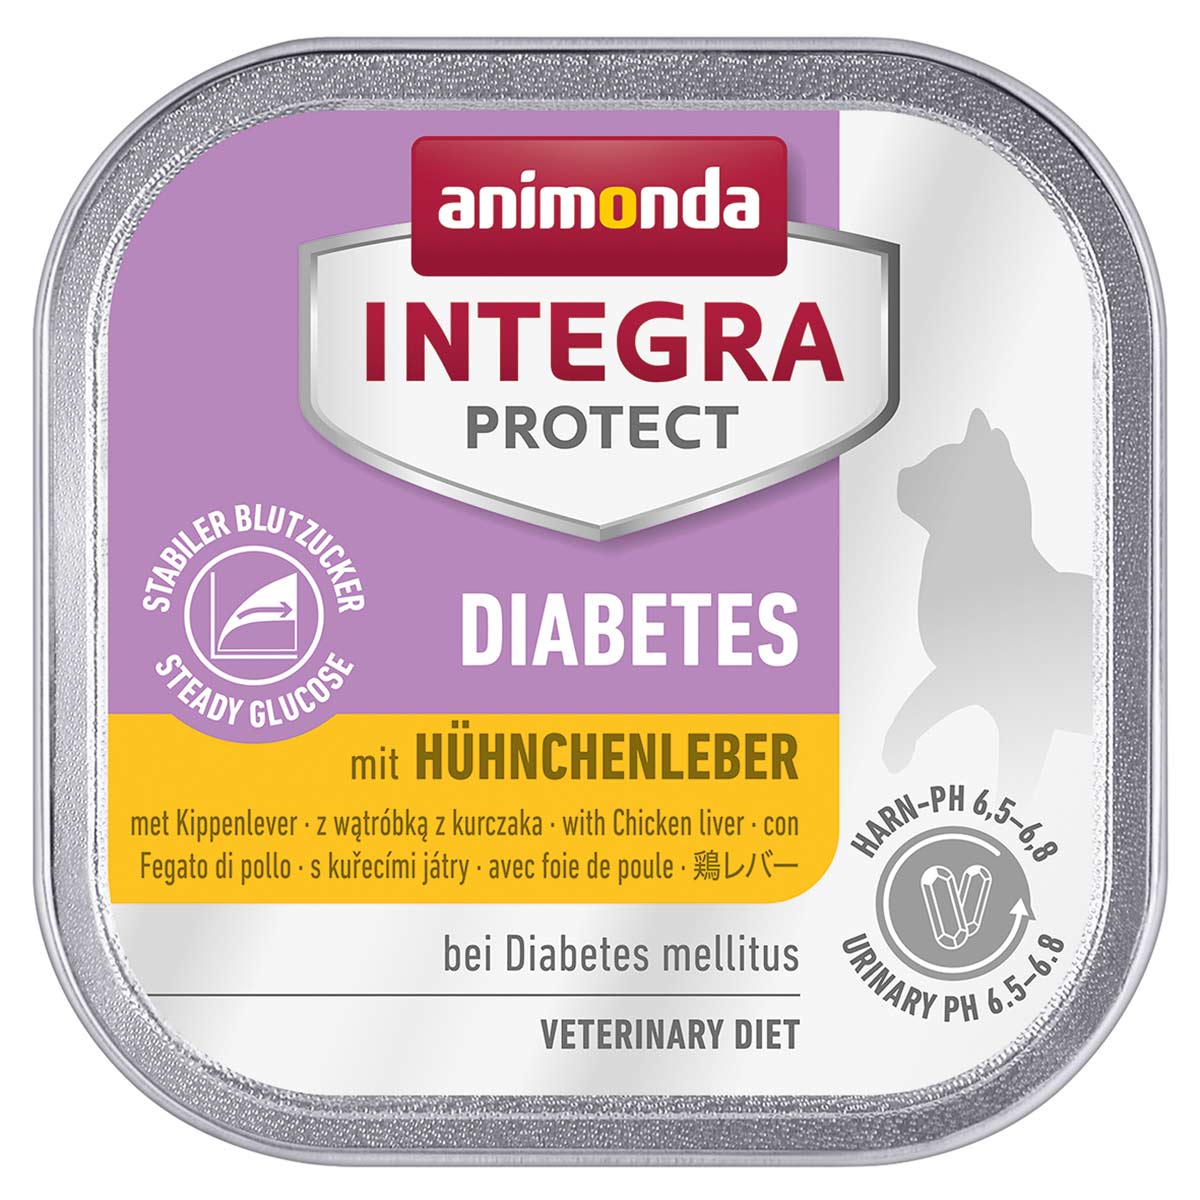 animonda INTEGRA PROTECT Diabetes mit Hühnchenleber 16x100g